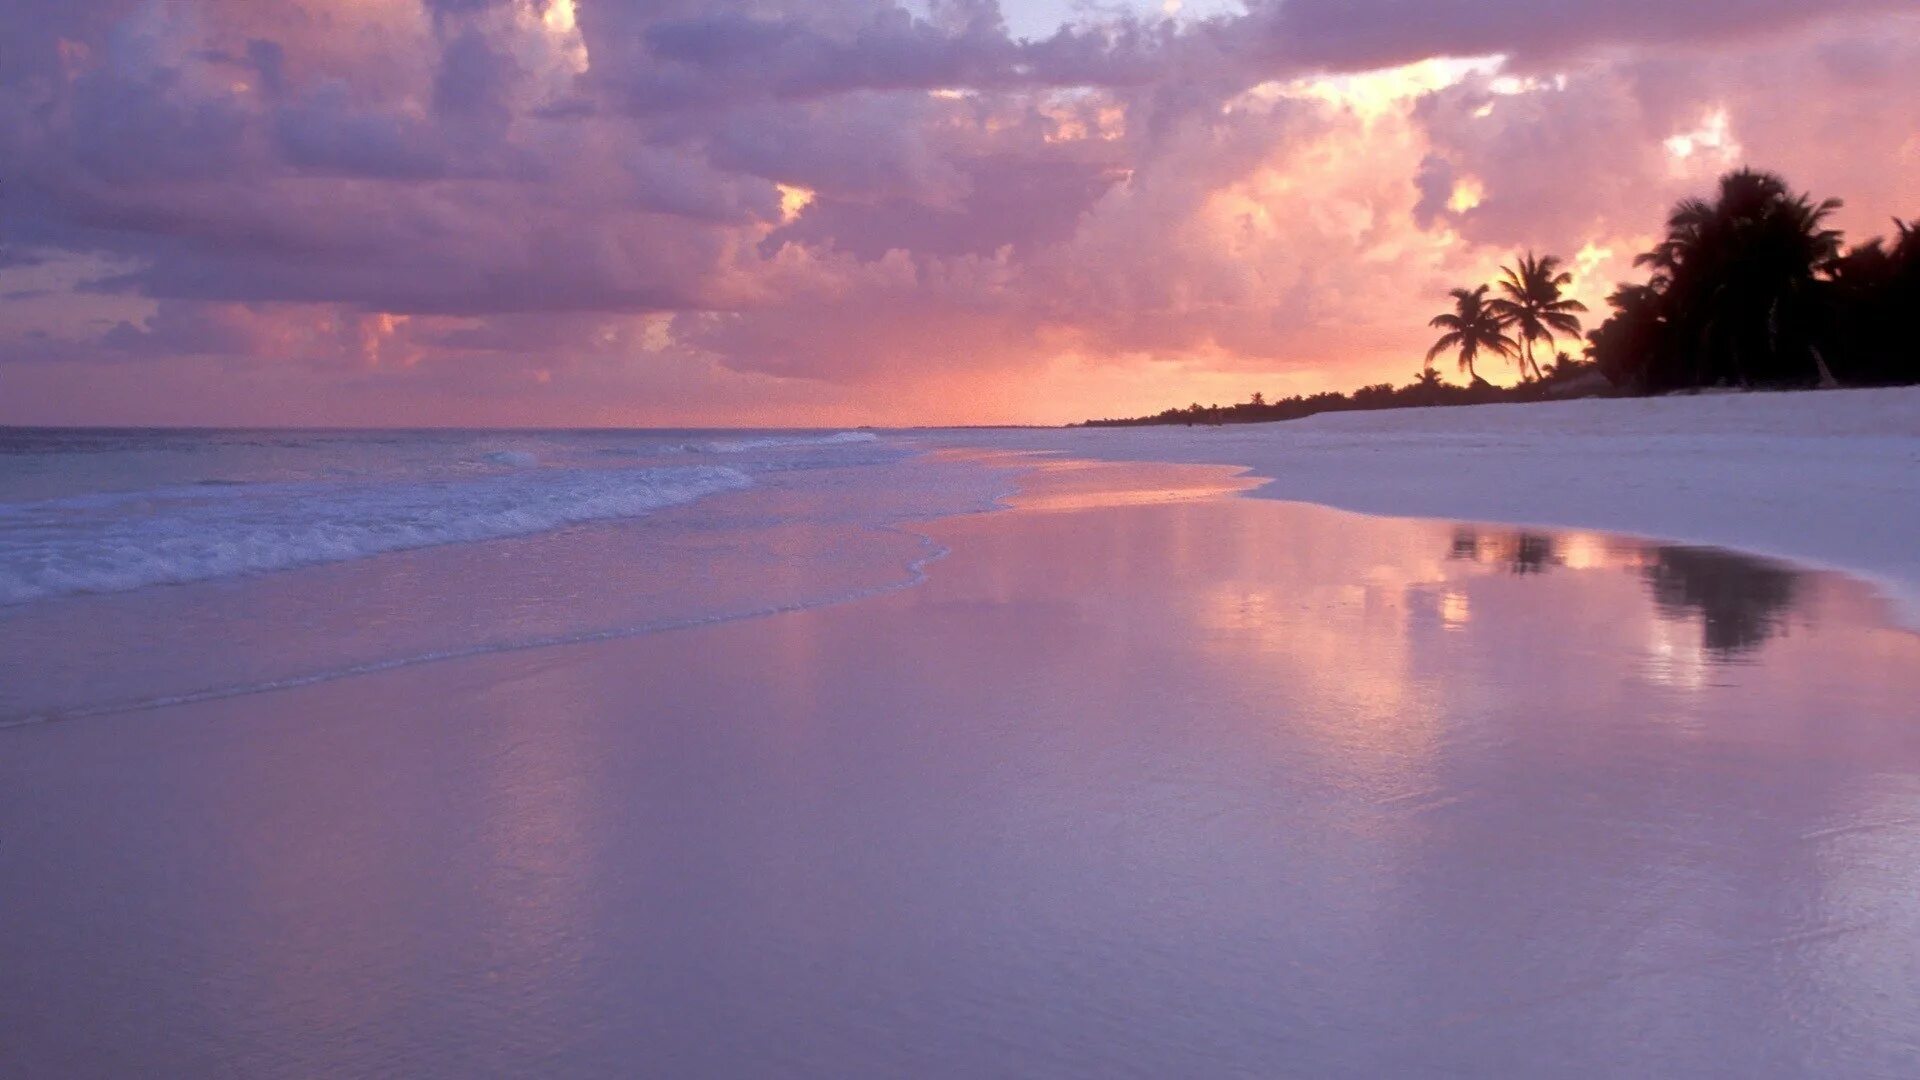 Обои на телефон эстетика лето. Сансет Бич Мальдивы. Пляж закат. Розовый закат. Природа море.